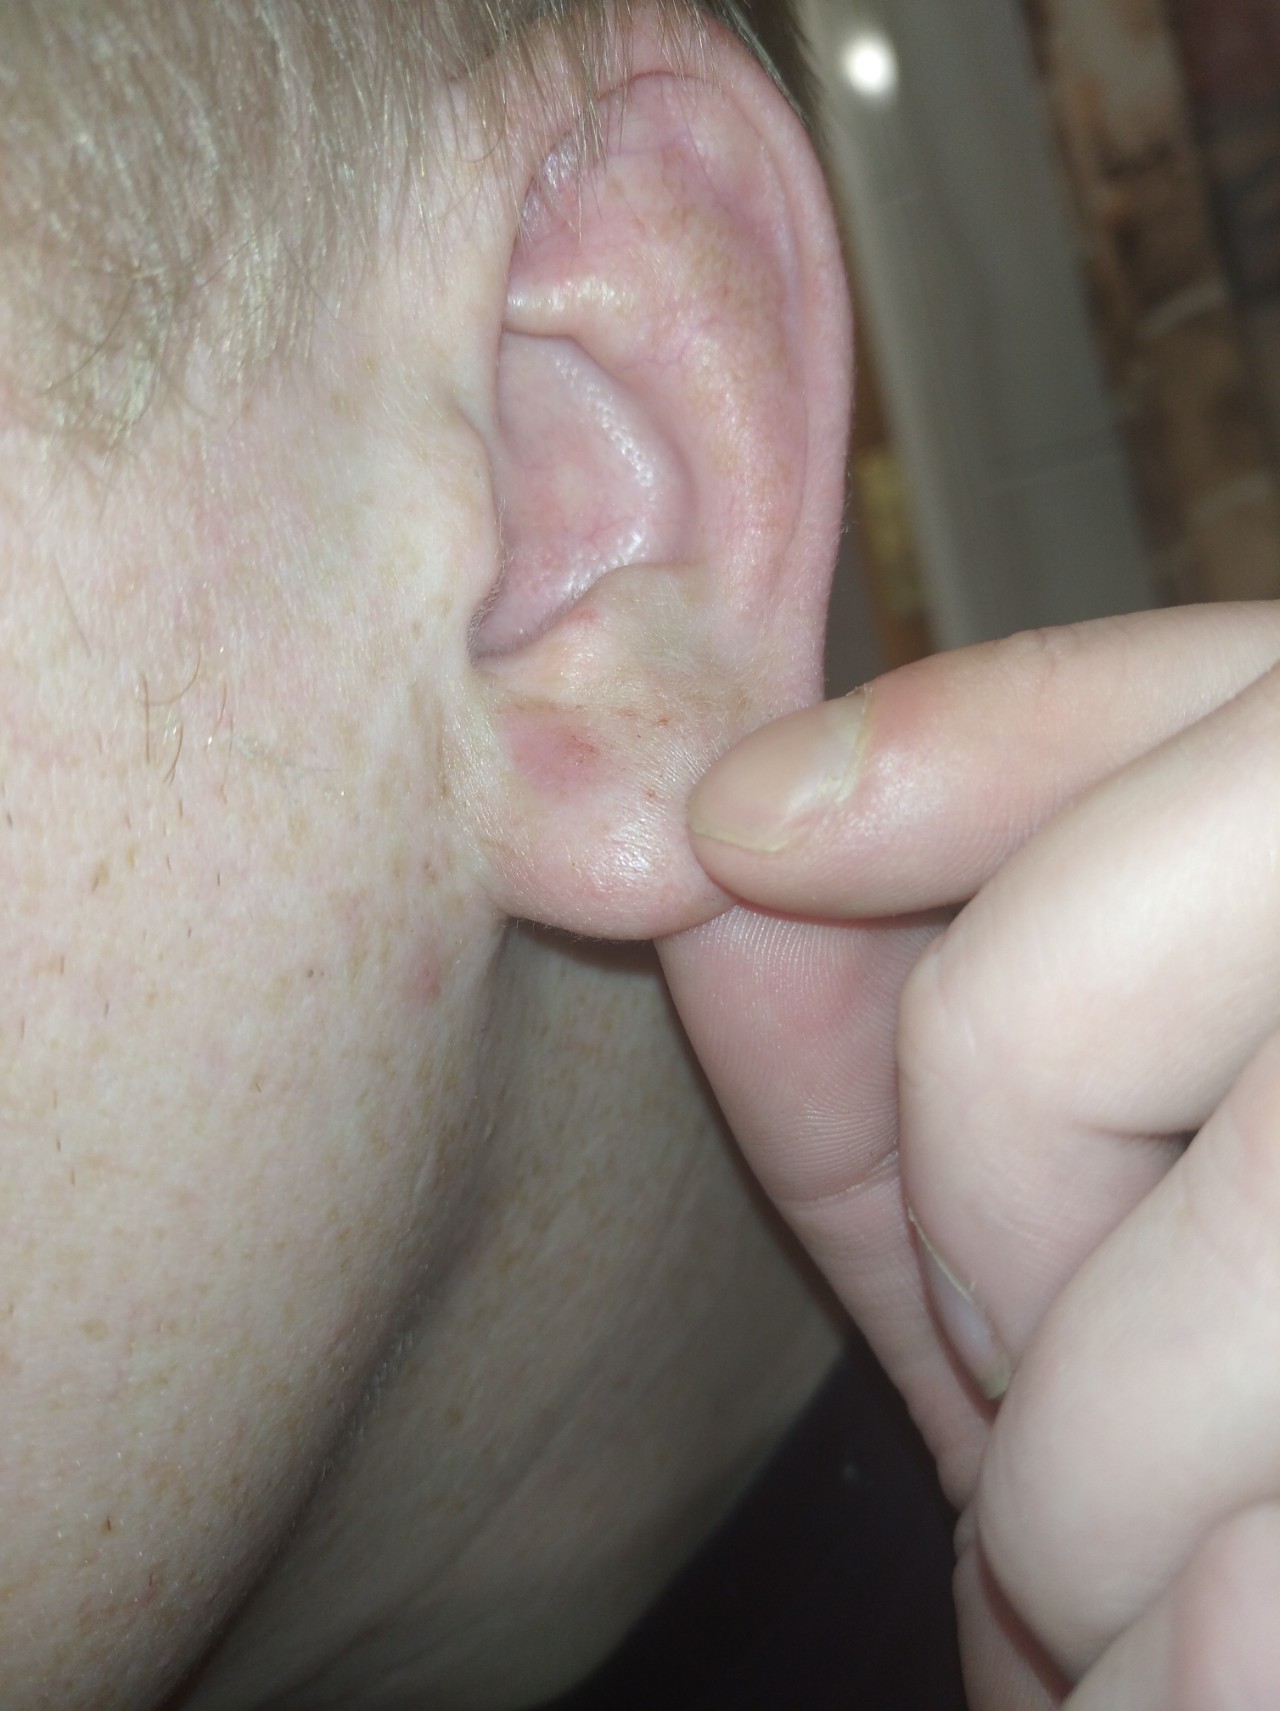 Причины появления уплотнения в мочку уха